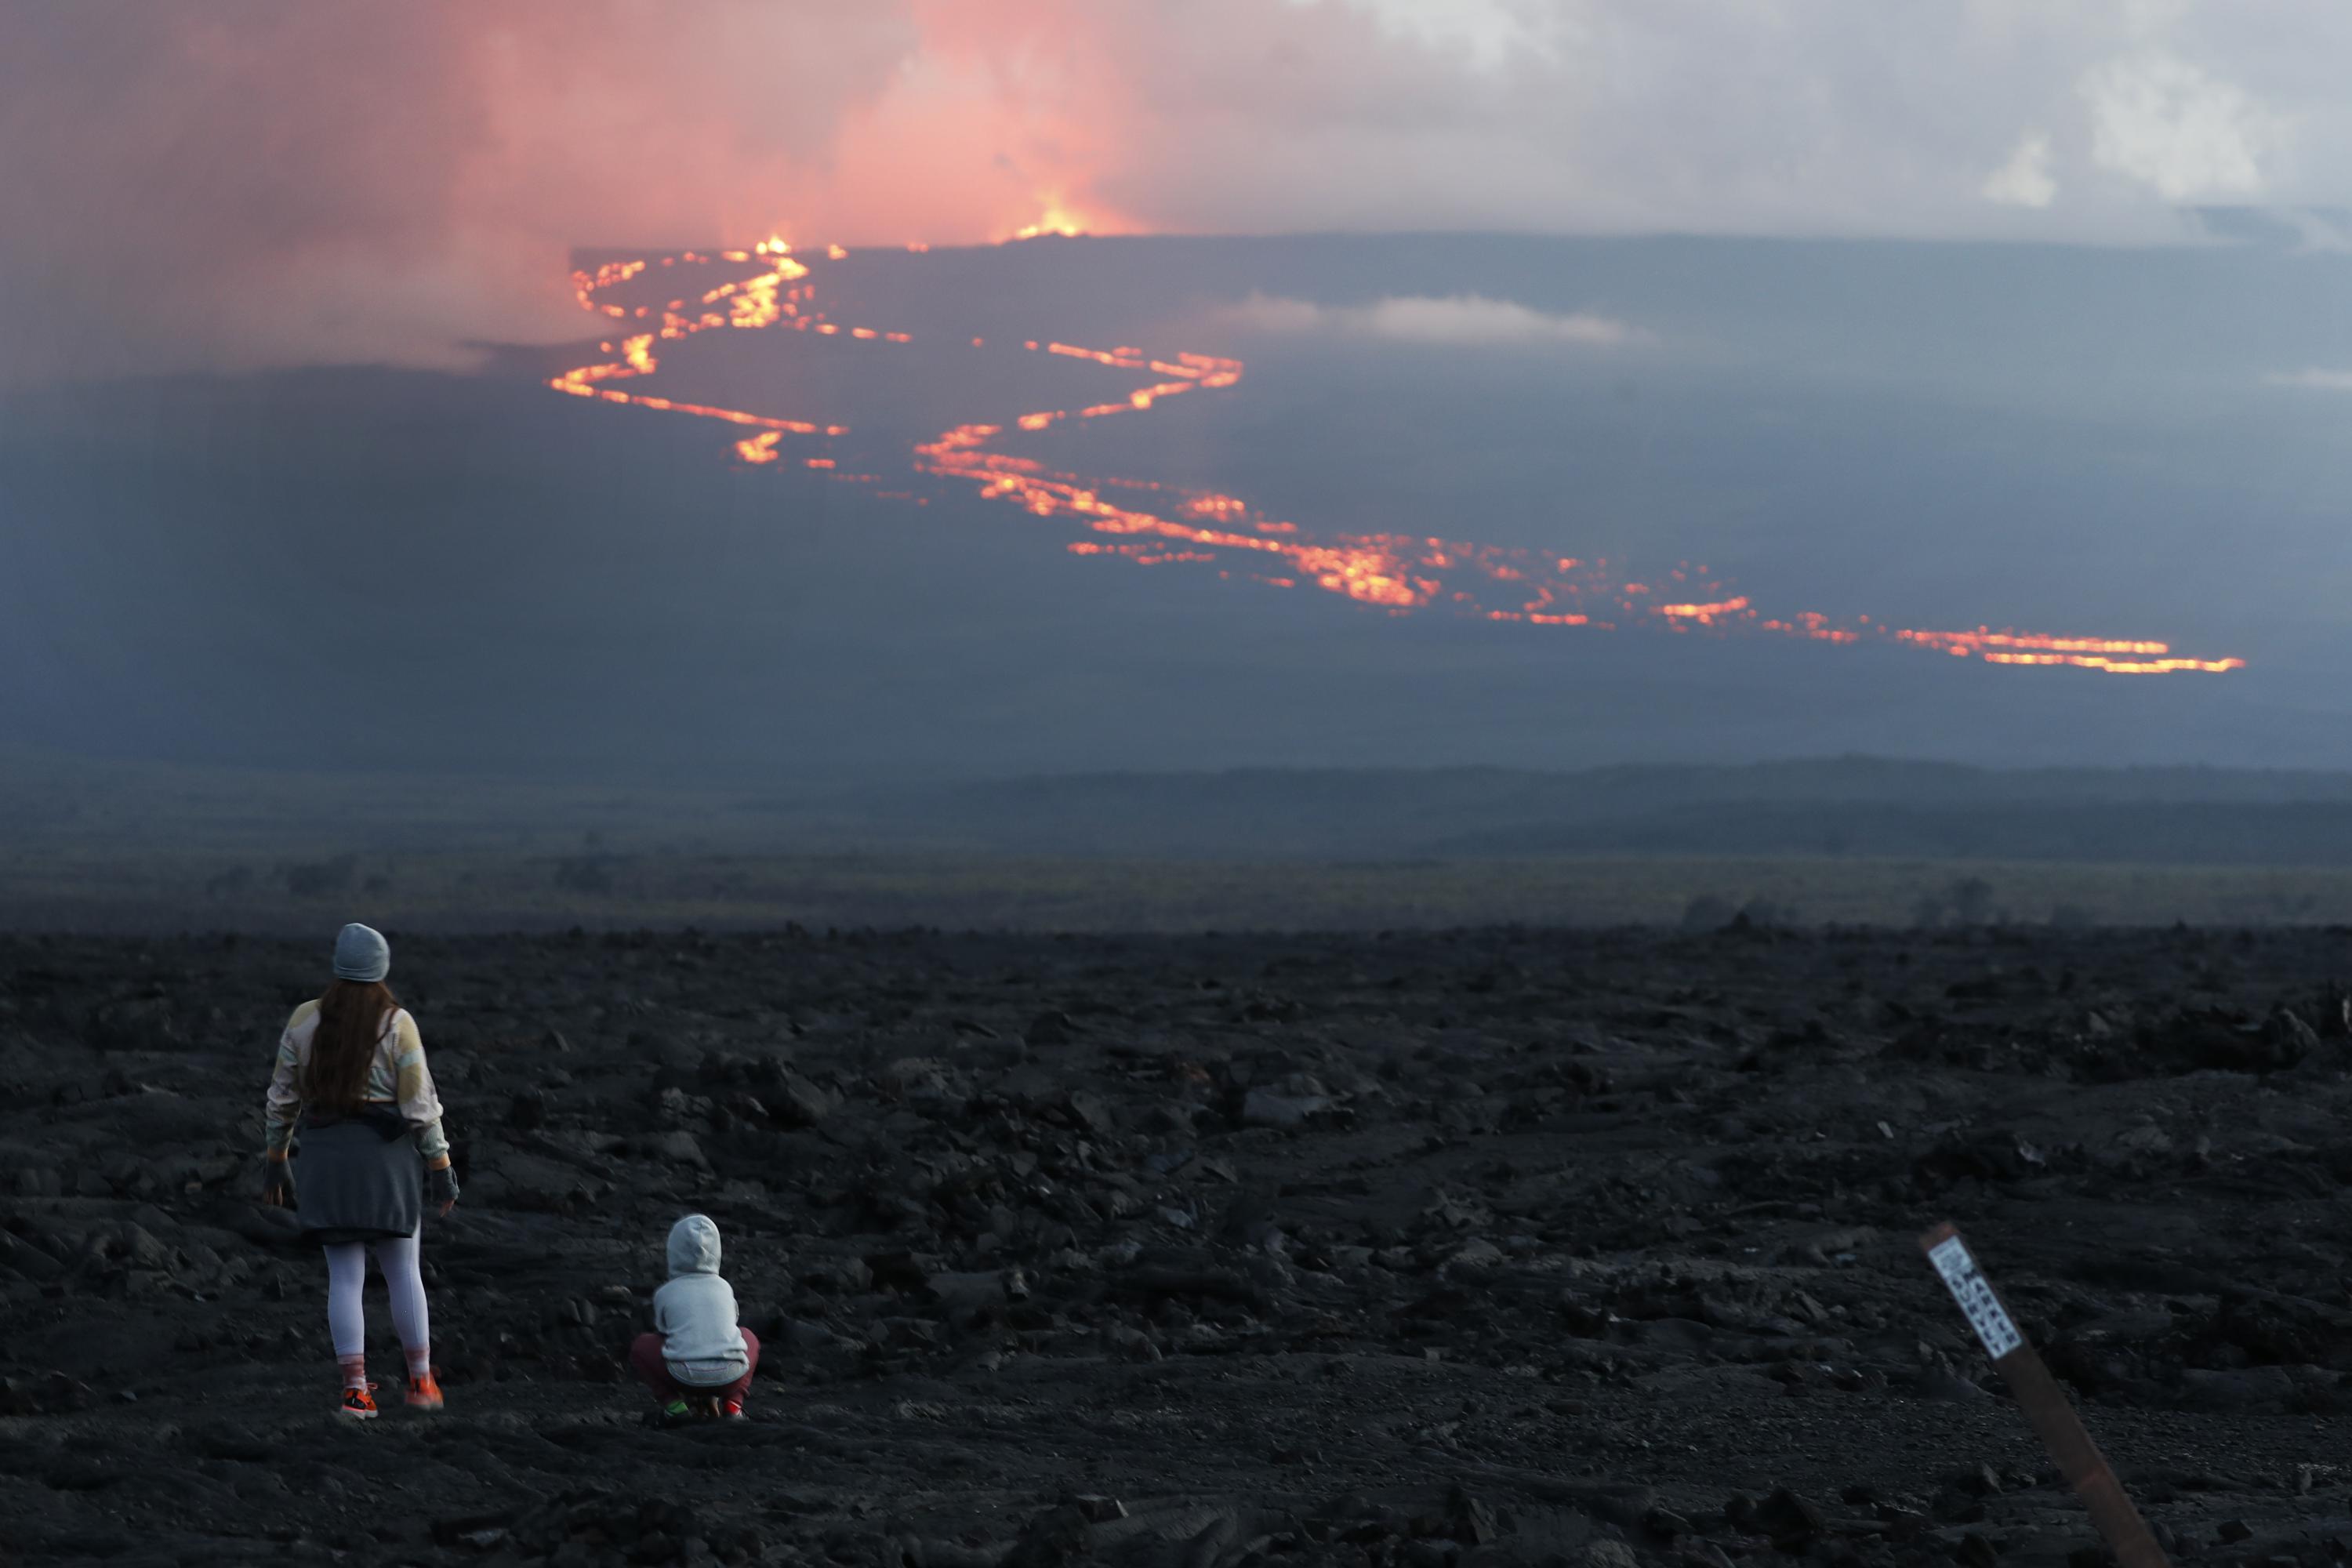 Hawaii volcano eruption has some on alert, draws onlookers - The Associated Press - en Español